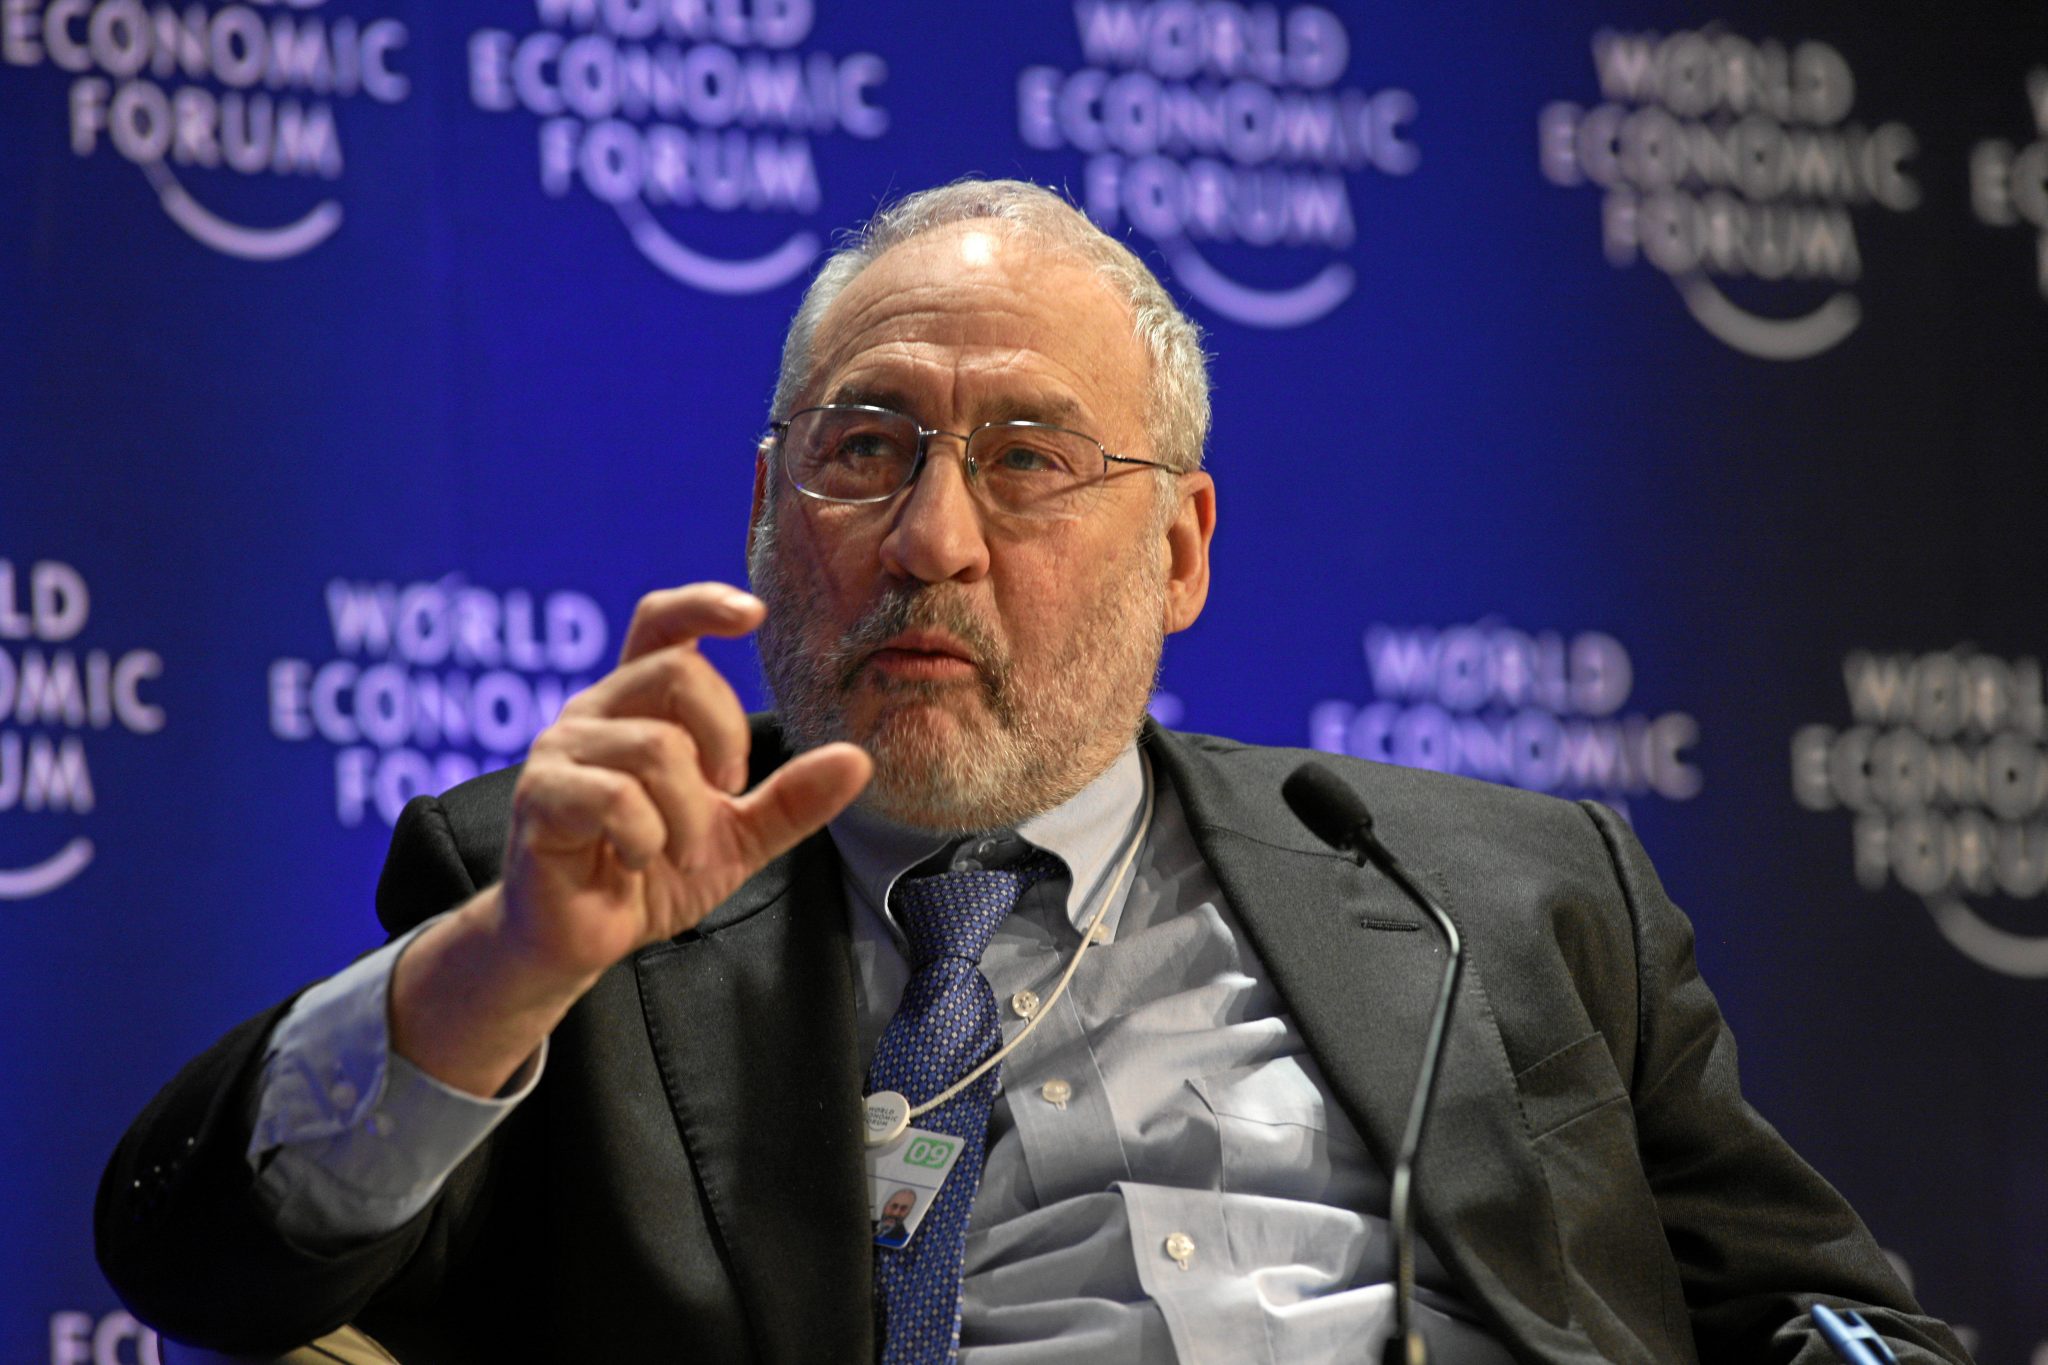 Nobelpreisträger Stiglitz will 70%-Steuer auf Top-Einkommen